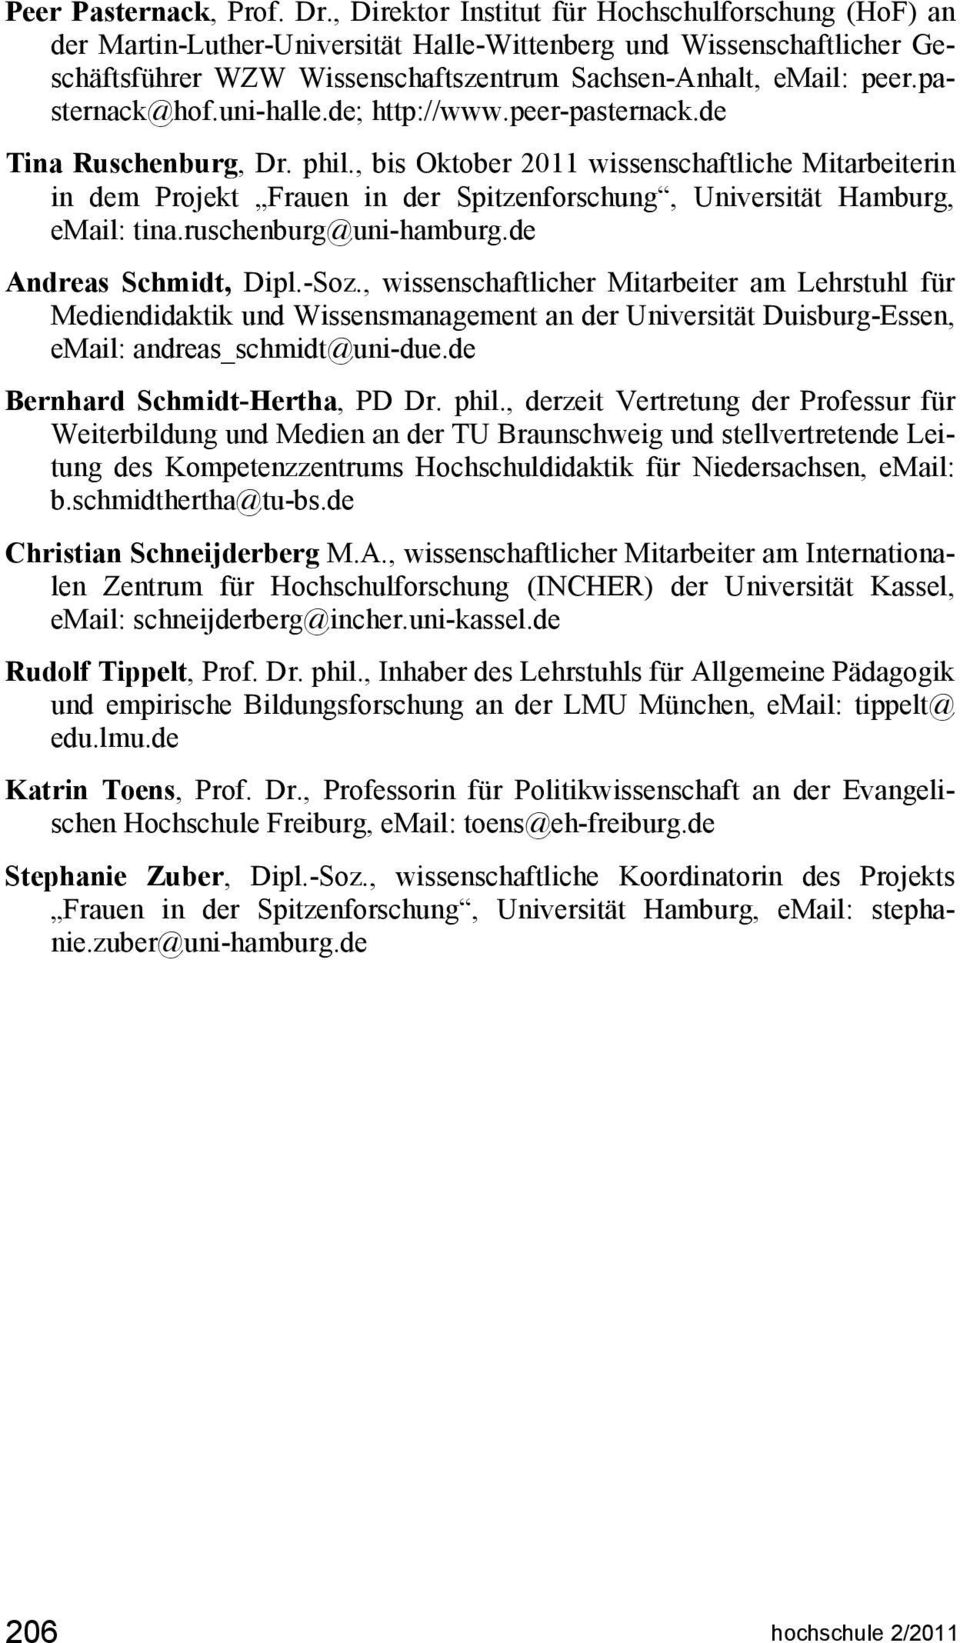 pasternack@hof.uni-halle.de; http://www.peer-pasternack.de Tina Ruschenburg, Dr. phil.